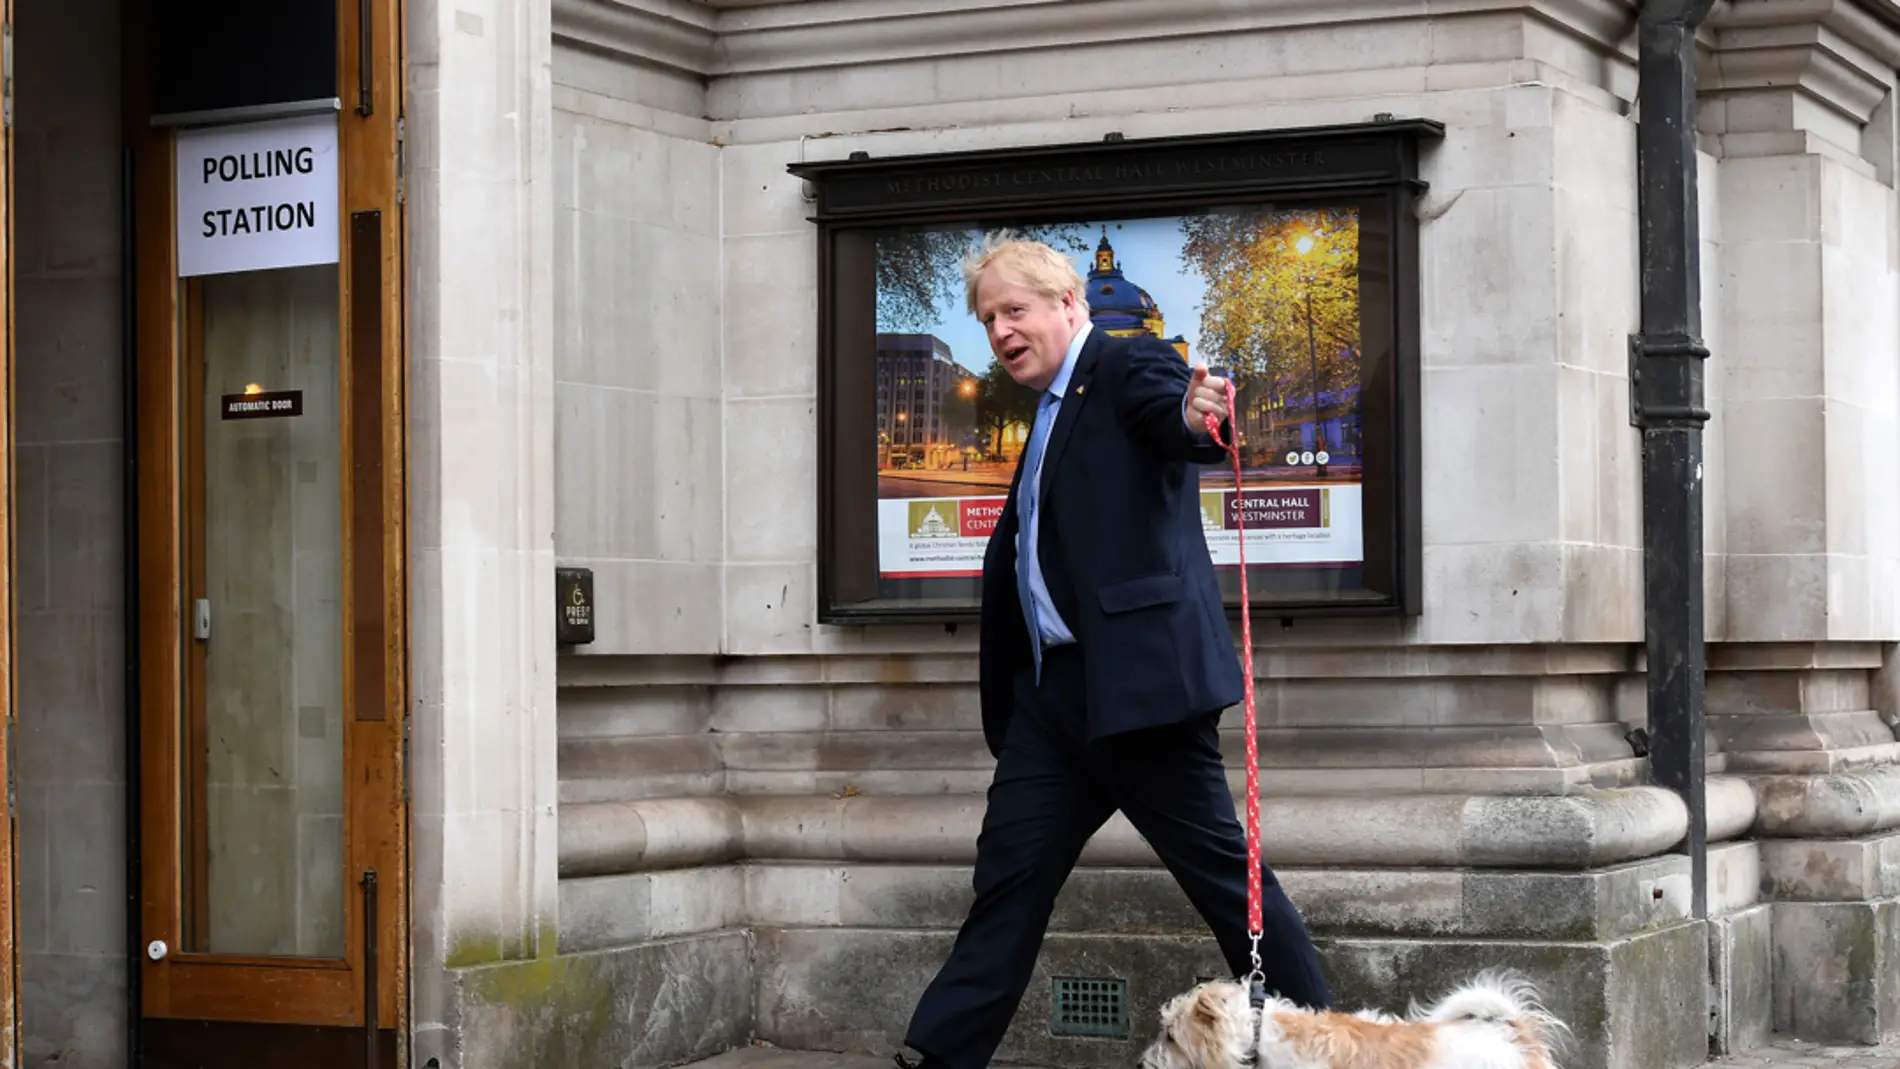 El primer ministro británico, Boris Johnson, llega a un colegio electoral con su perro Dilyn para votar durante las elecciones locales en Westminster, Londres/ EFE/ANDY RAIN